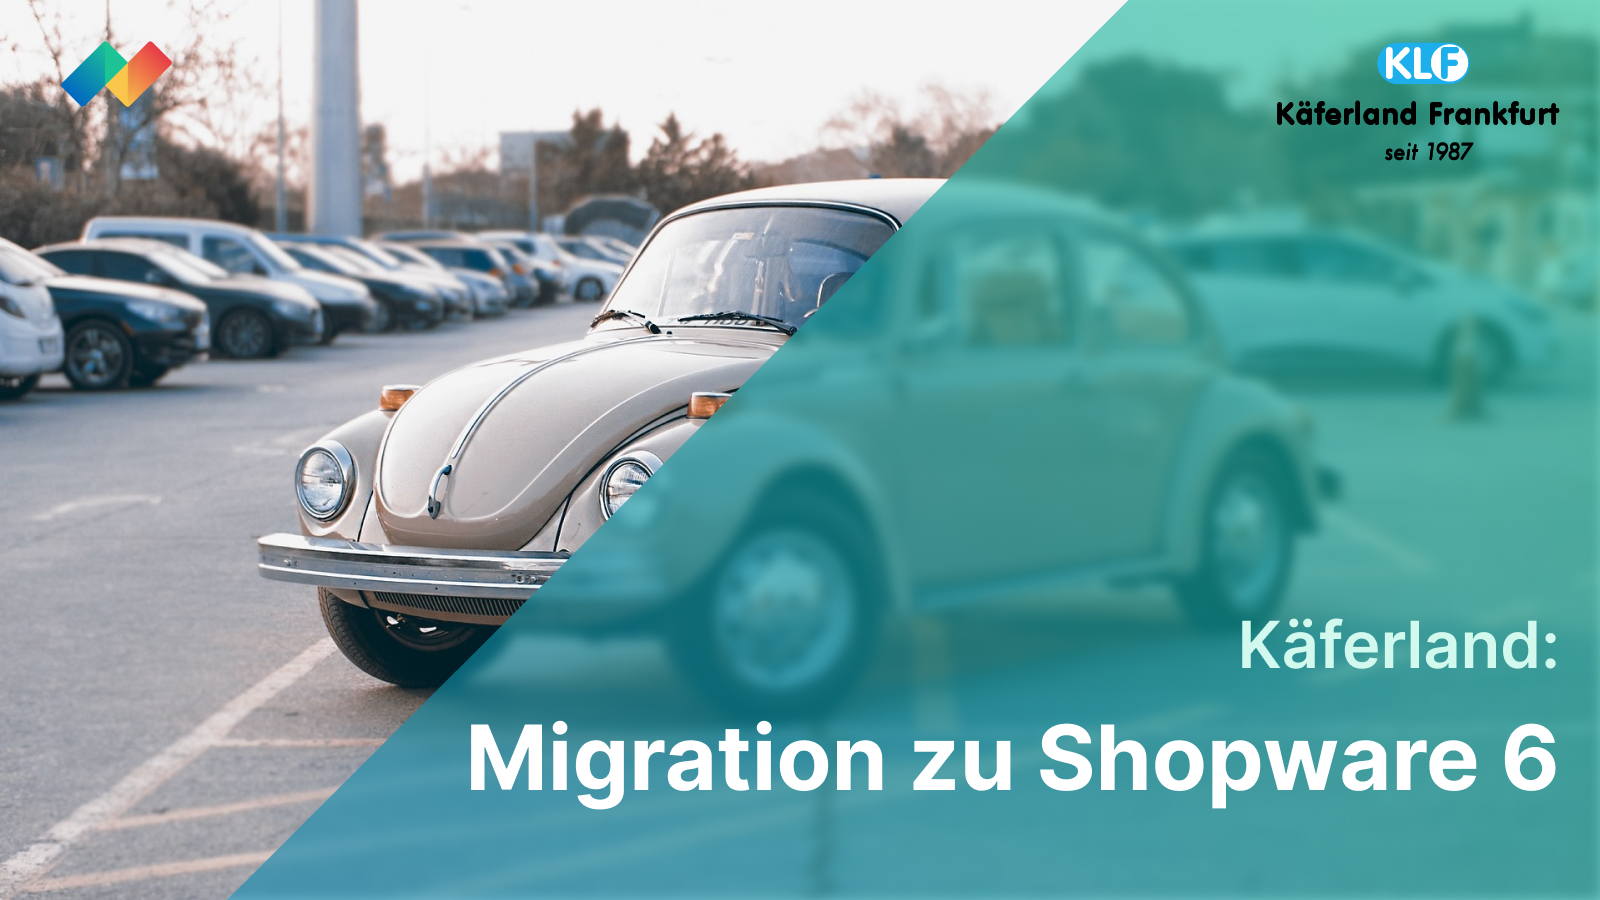 Migration zu Shopware 6 für den Käferland Onlineshop